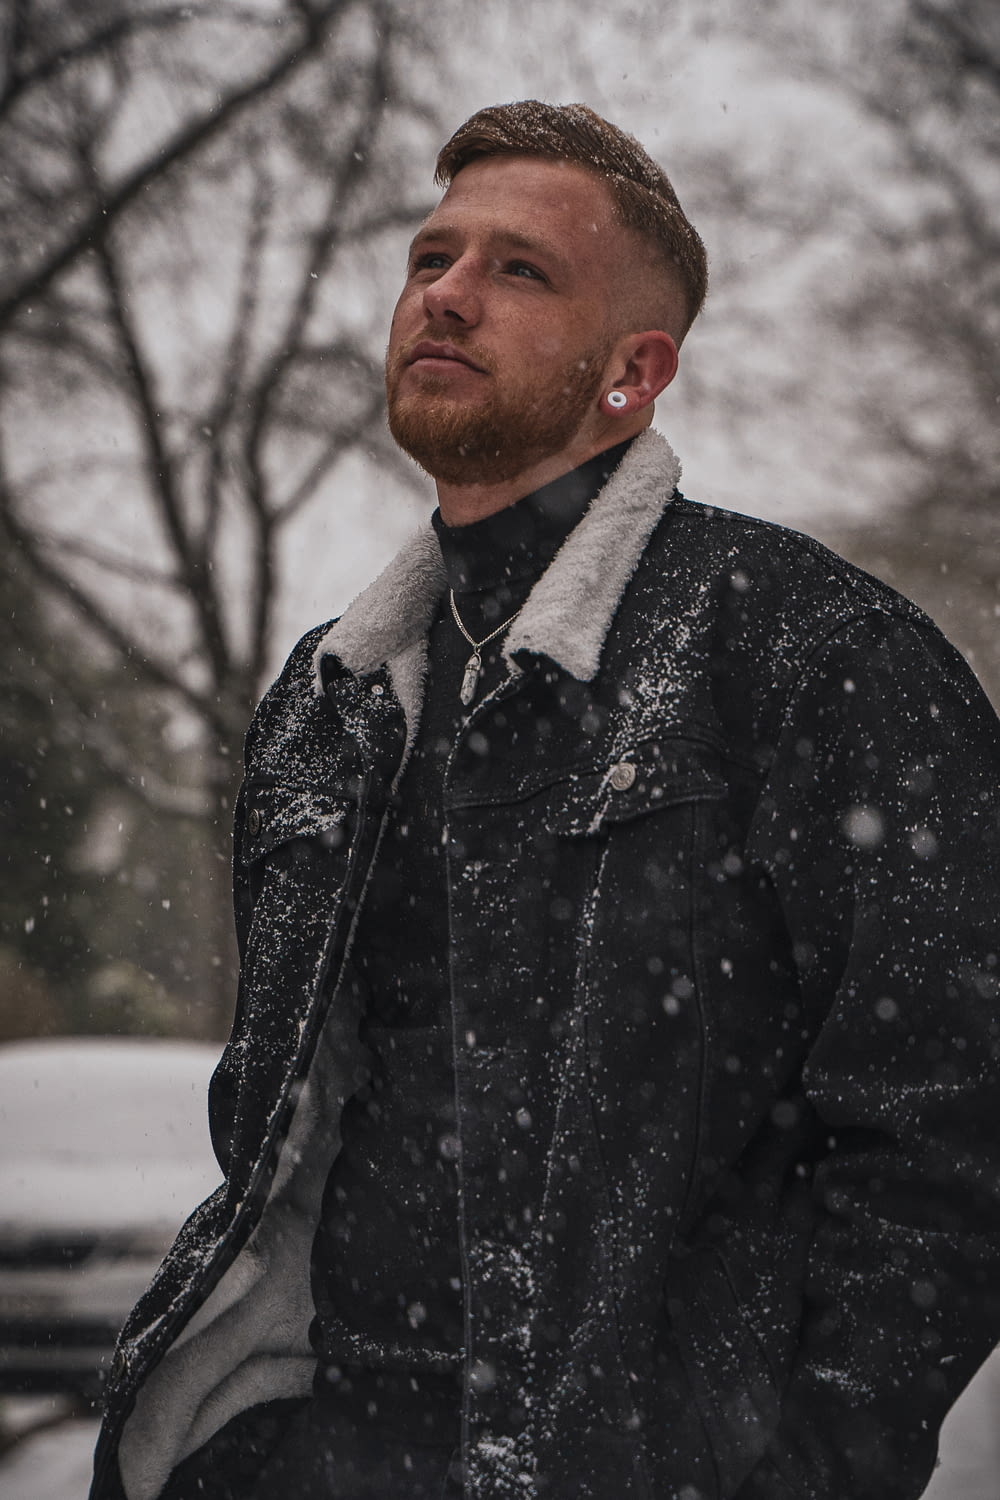 Mann in schwarz-grauer Button-up-Jacke tagsüber auf schneebedecktem Boden